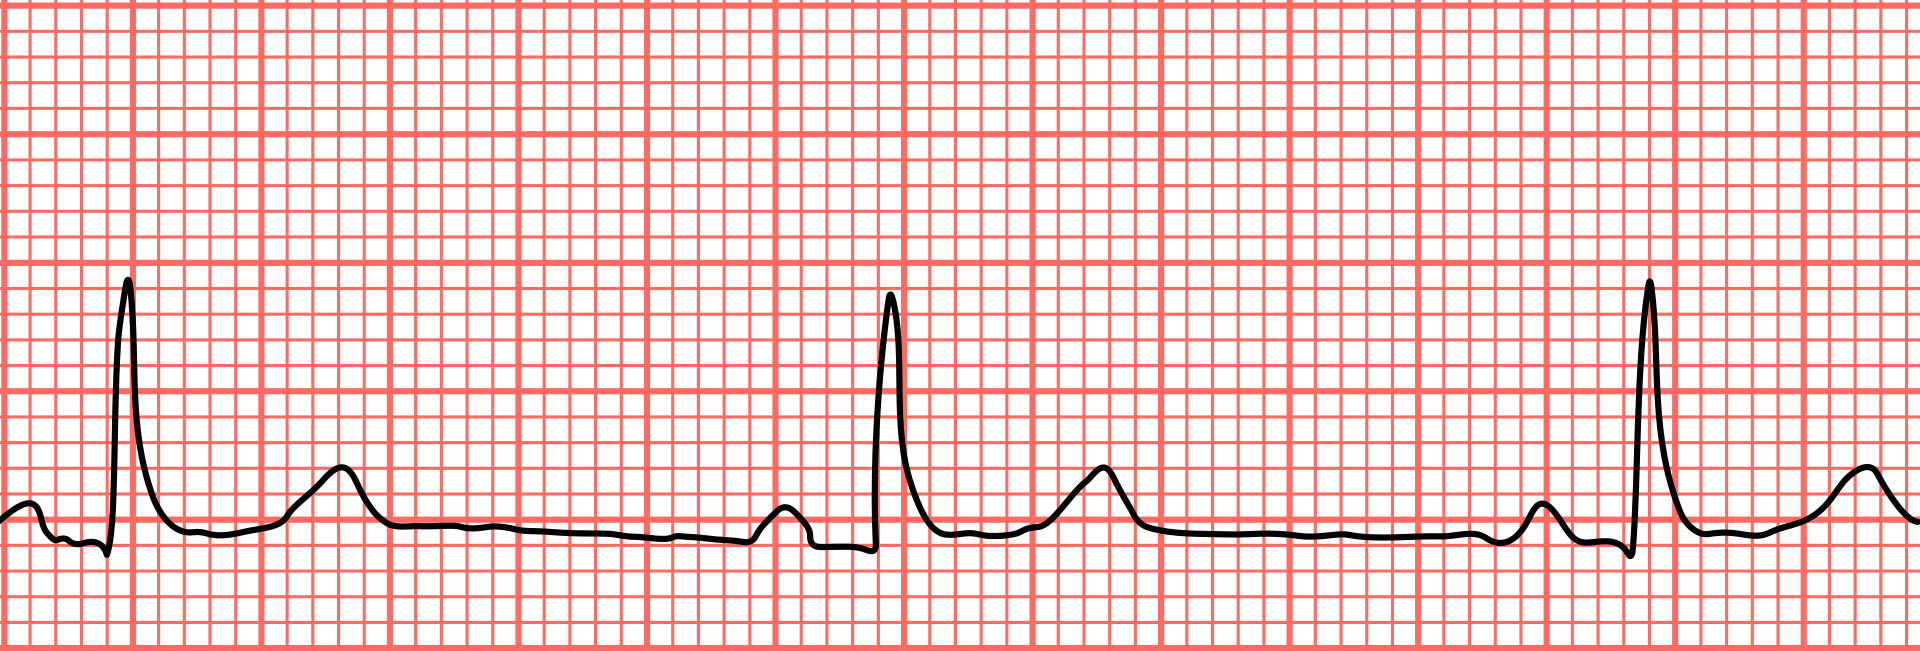 Bradycardie: hartslag die onder het normale bereik ligt